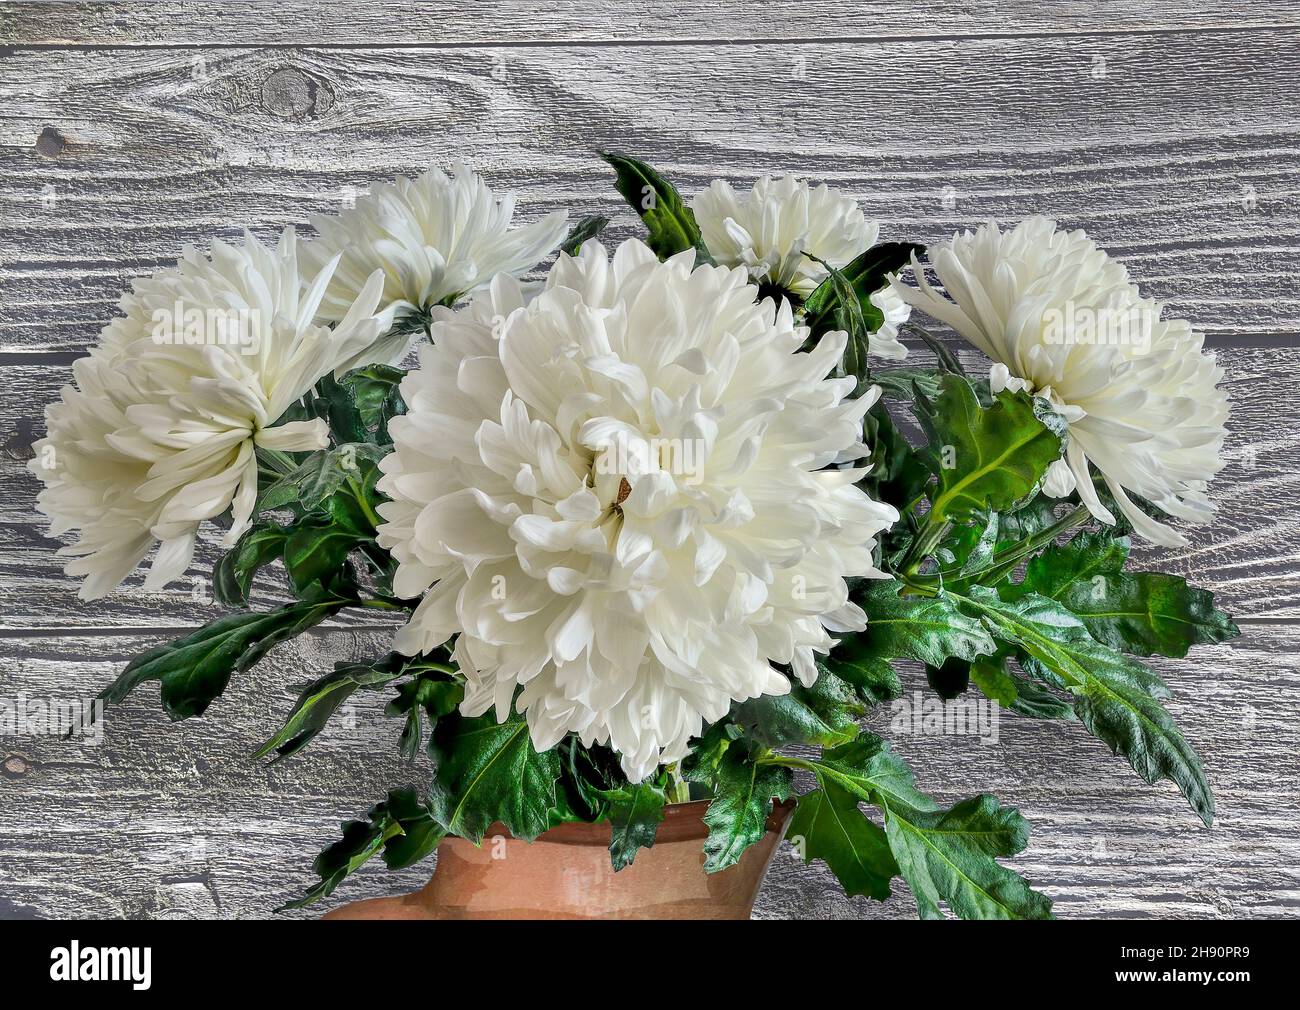 Bouquet von weißen flauschigen Chrysantheme Blumen mit grünen Blättern Nahaufnahme auf weißem Holz Hintergrund. Ländliche Blumenzusammensetzung - Grußkarte für alle Stockfoto